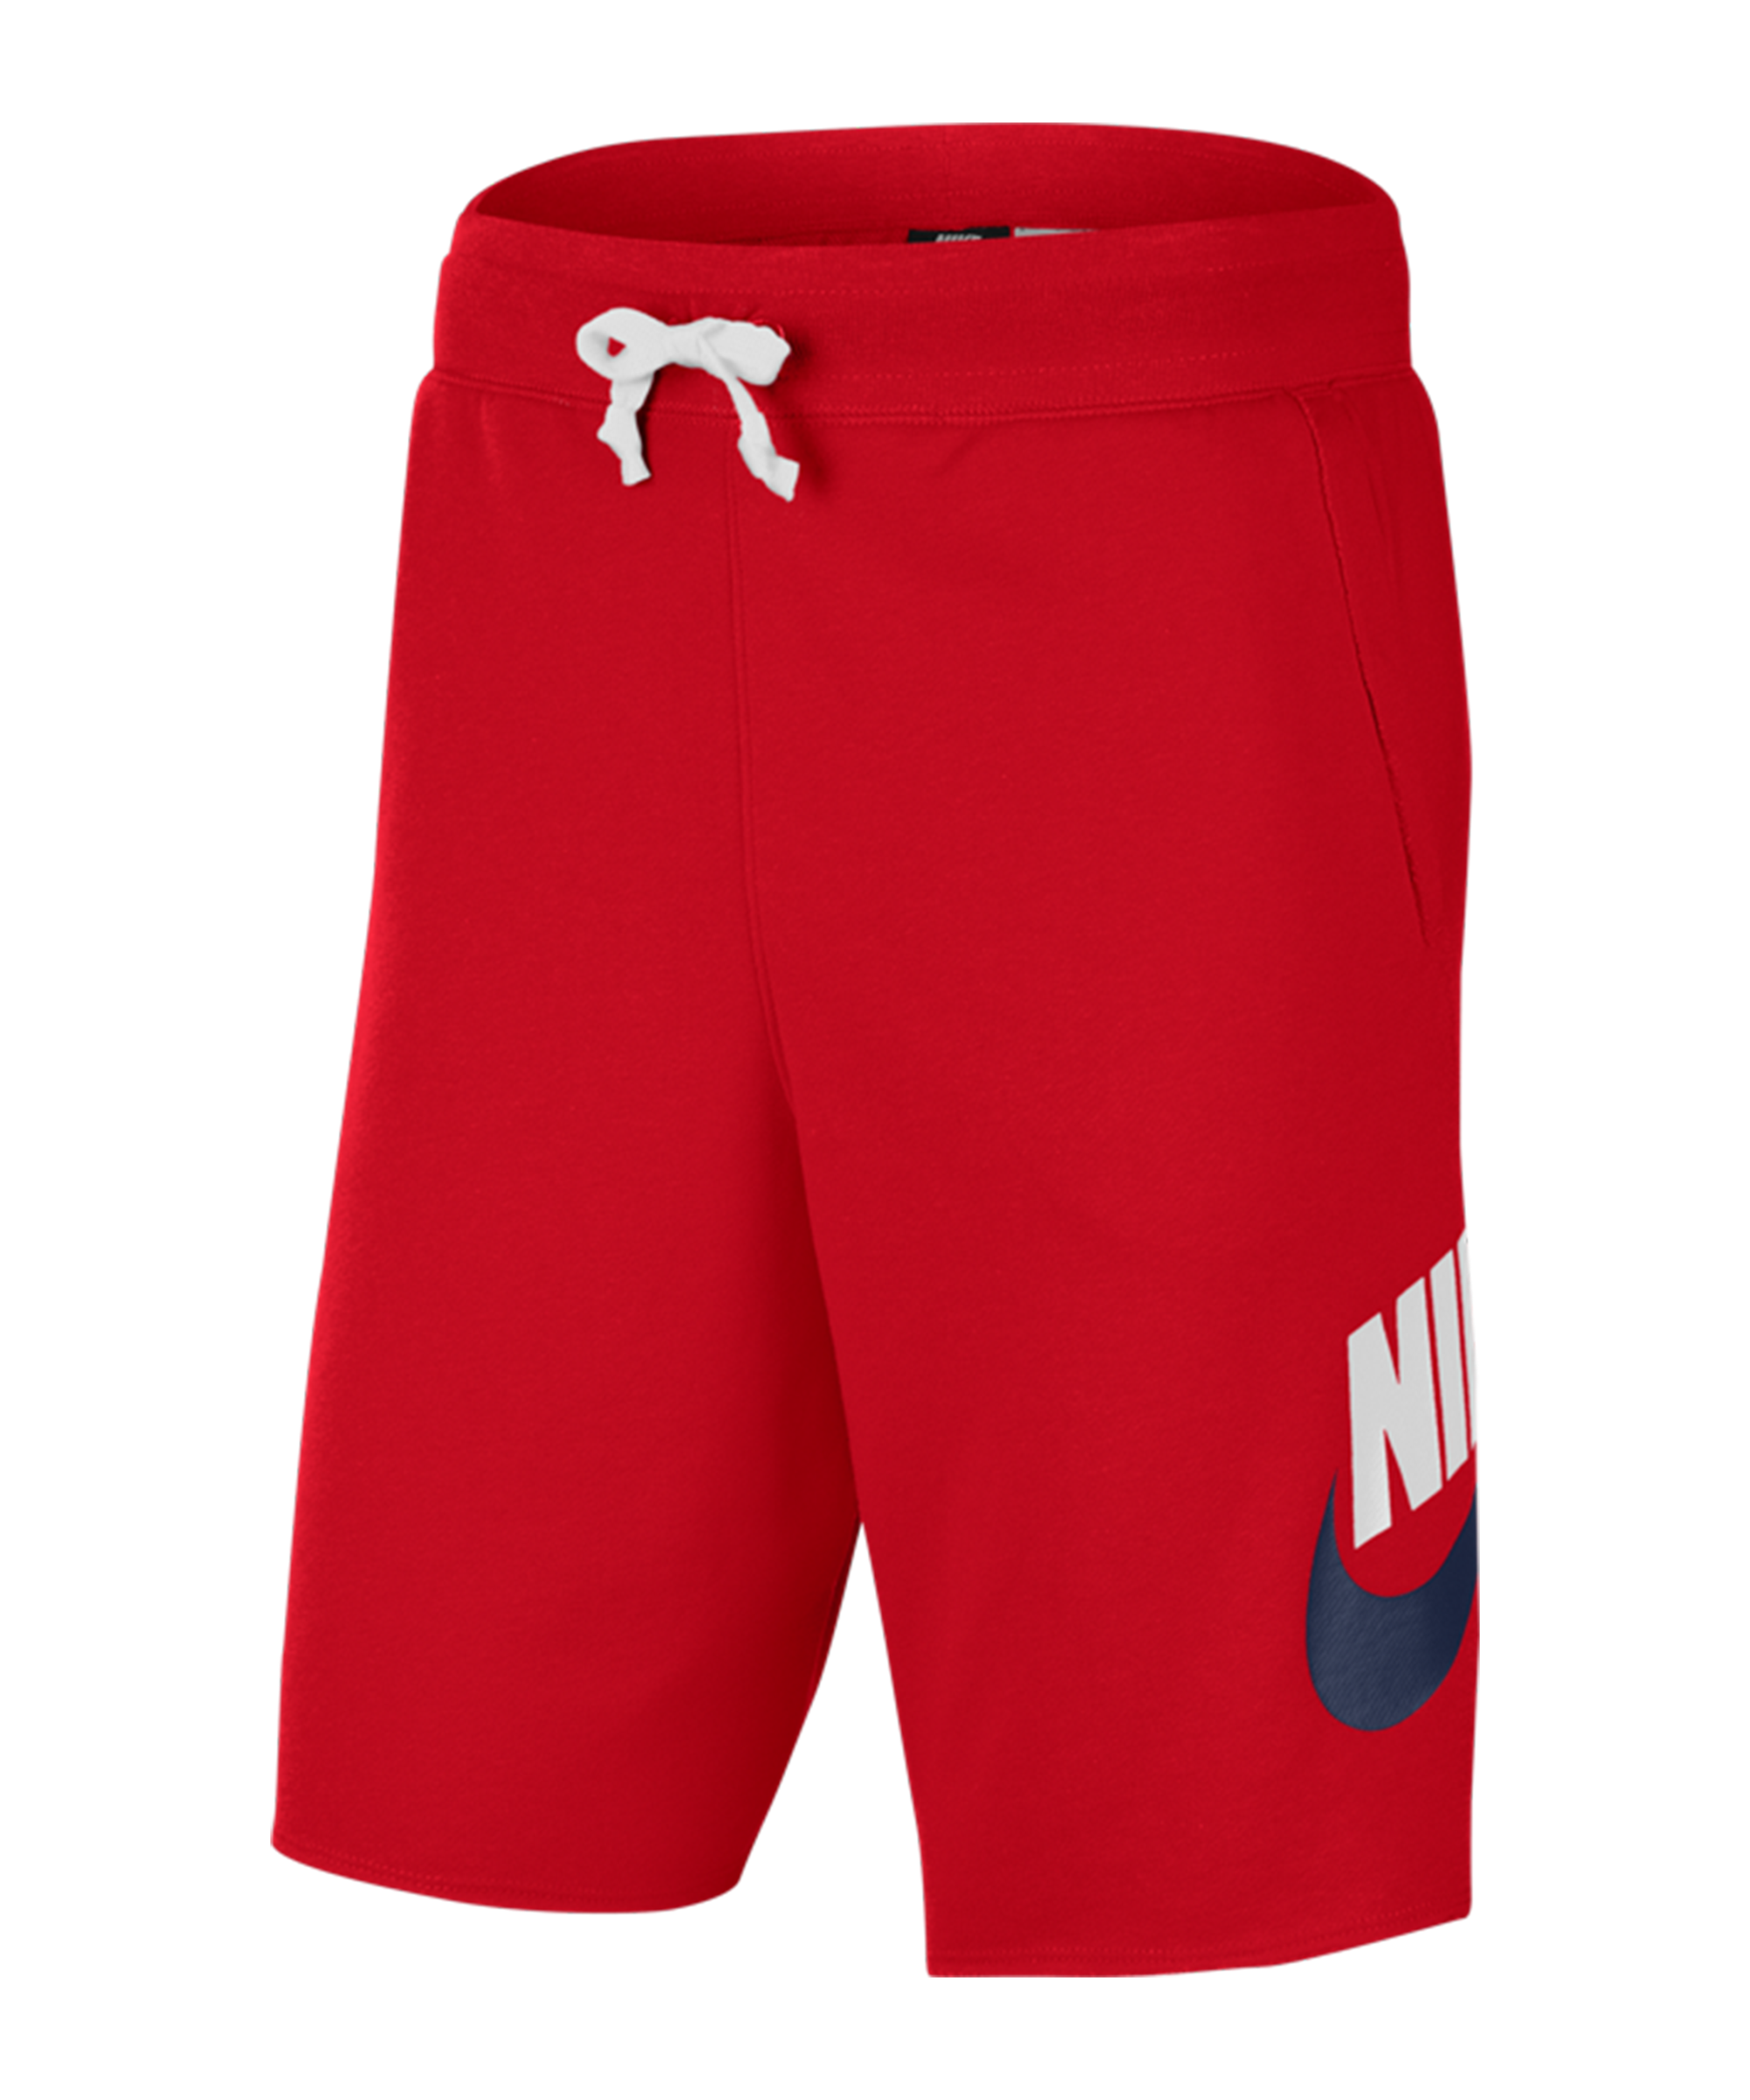 delivery Stewart island rinse Nike Sportswear Alumni Short - Red